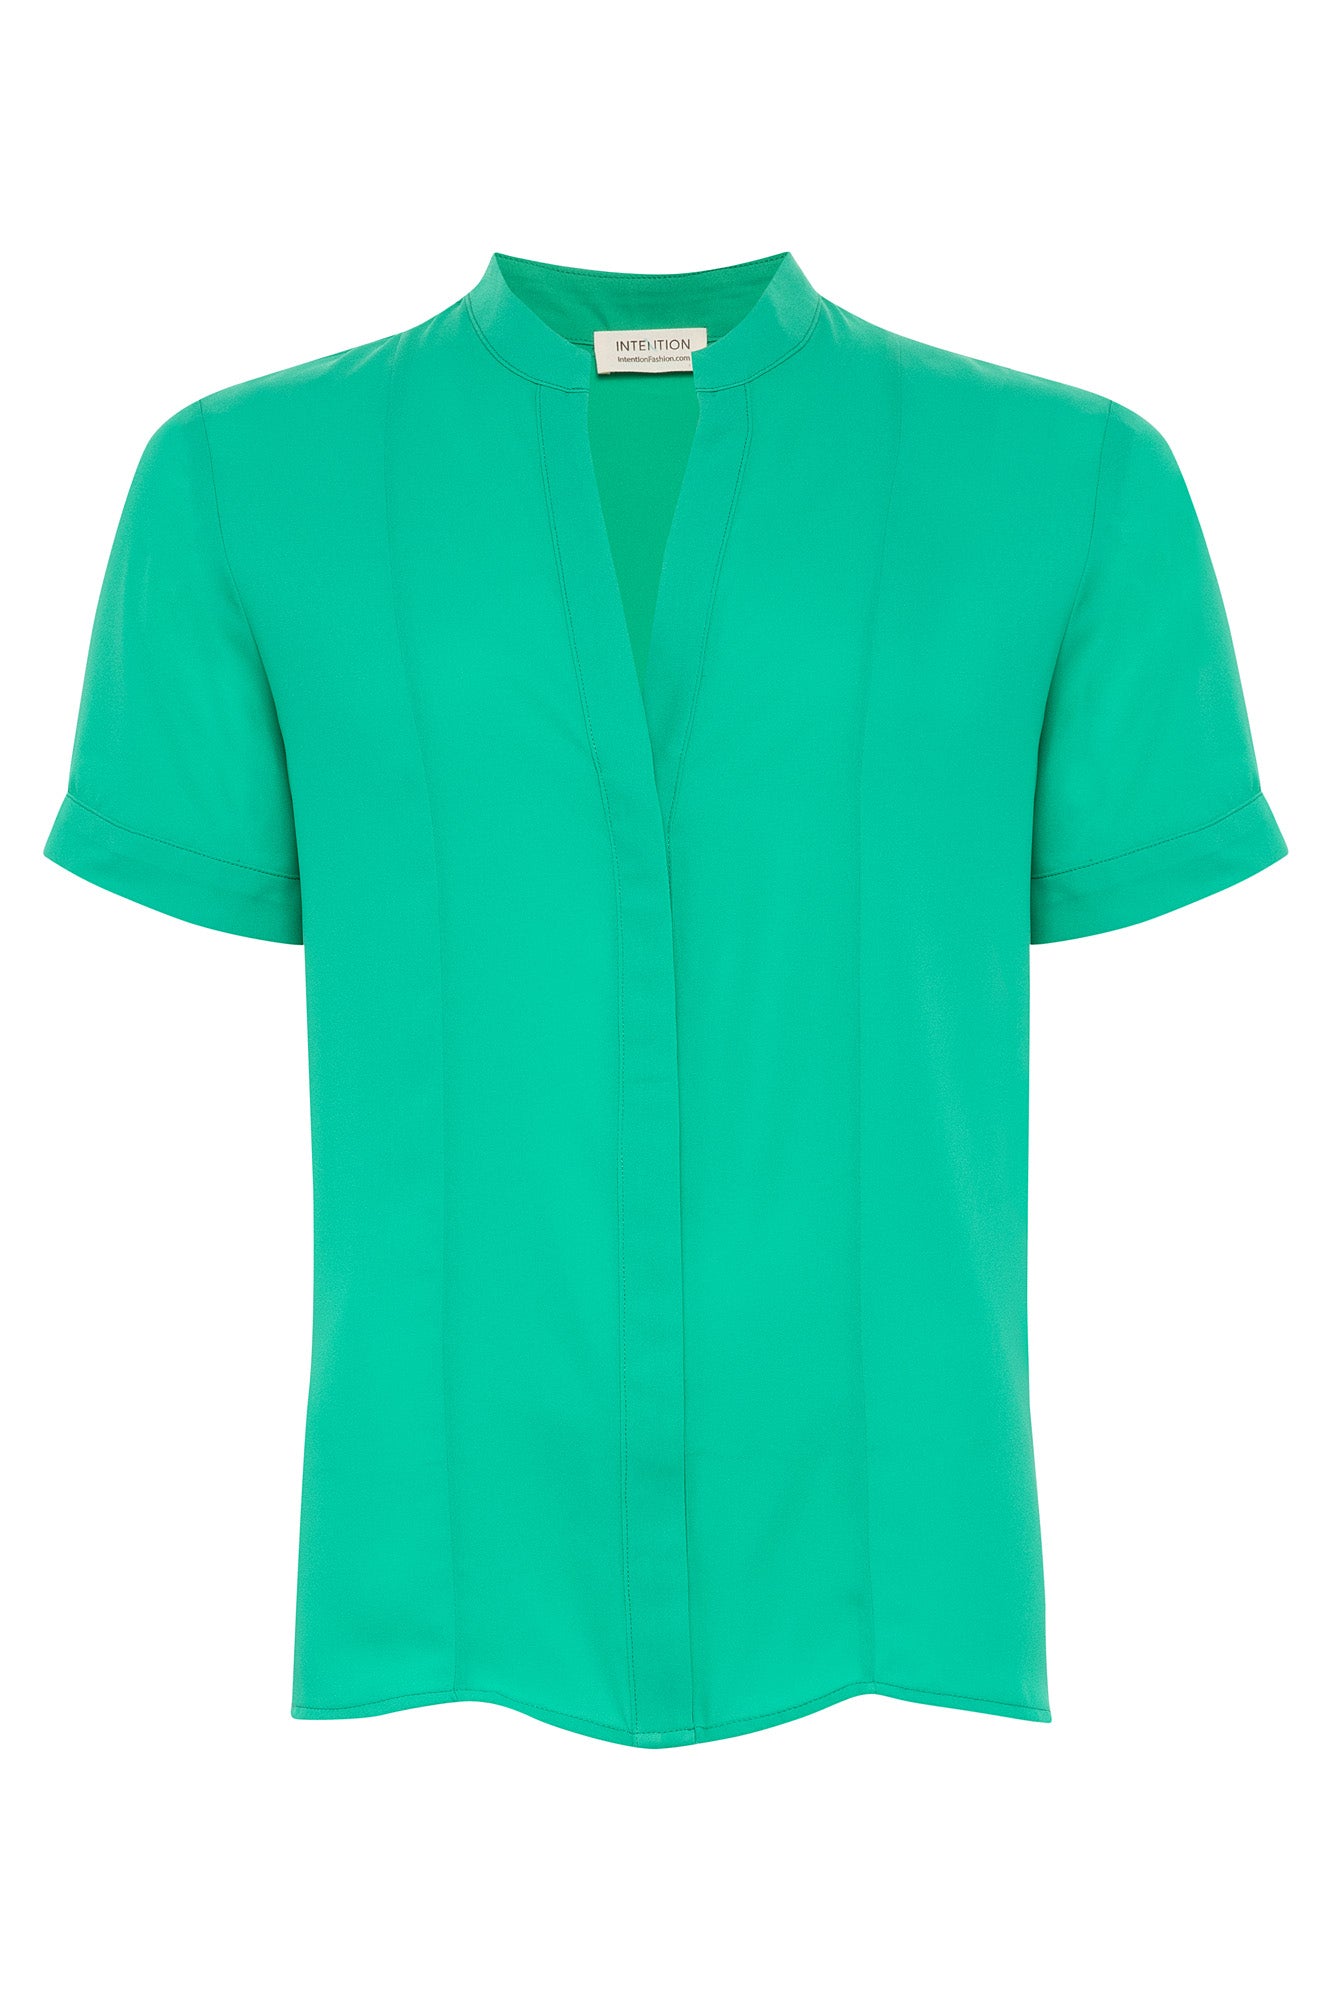 Emerald Green Split-Neck Short Sleeve Top